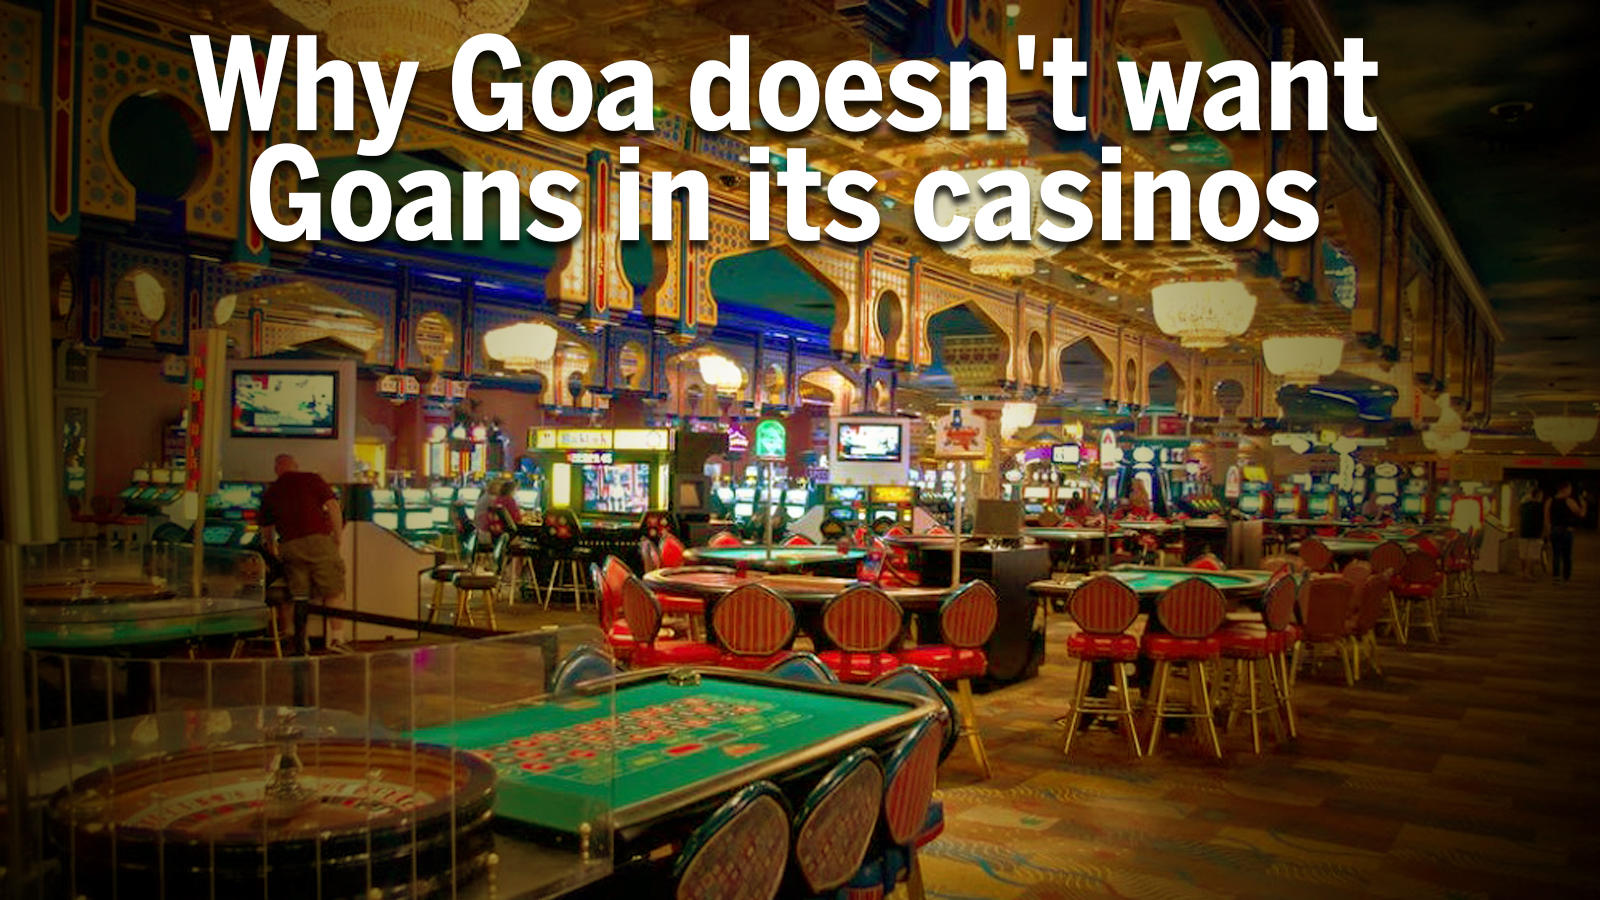 Goa Casino Images